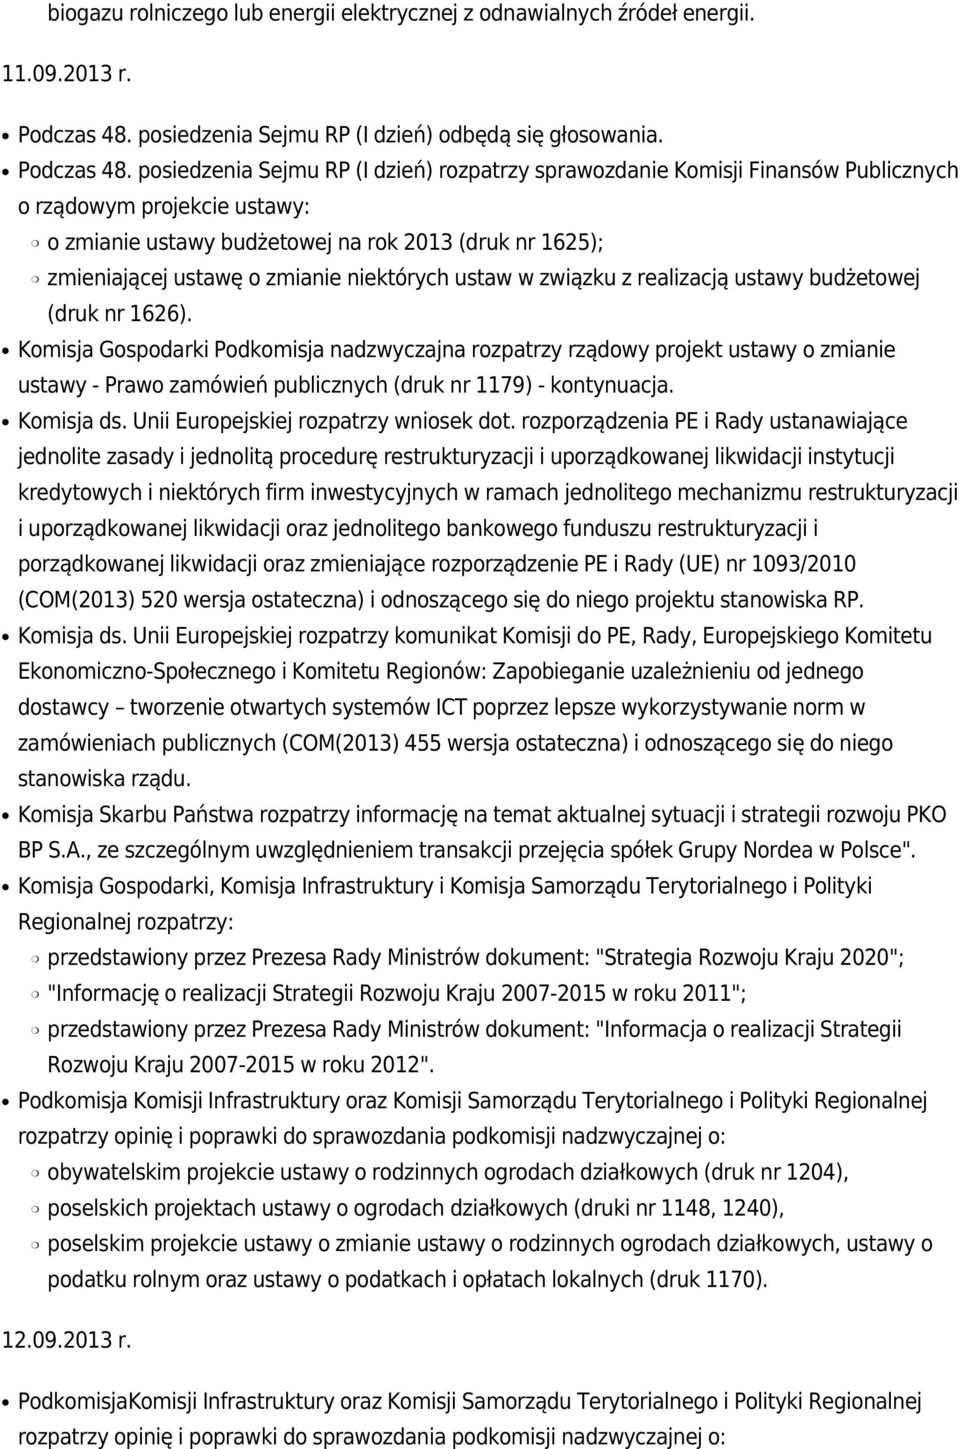 posiedzenia Sejmu RP (I dzień) rozpatrzy sprawozdanie Komisji Finansów Publicznych o rządowym projekcie ustawy: o zmianie ustawy budżetowej na rok 2013 (druk nr 1625); zmieniającej ustawę o zmianie